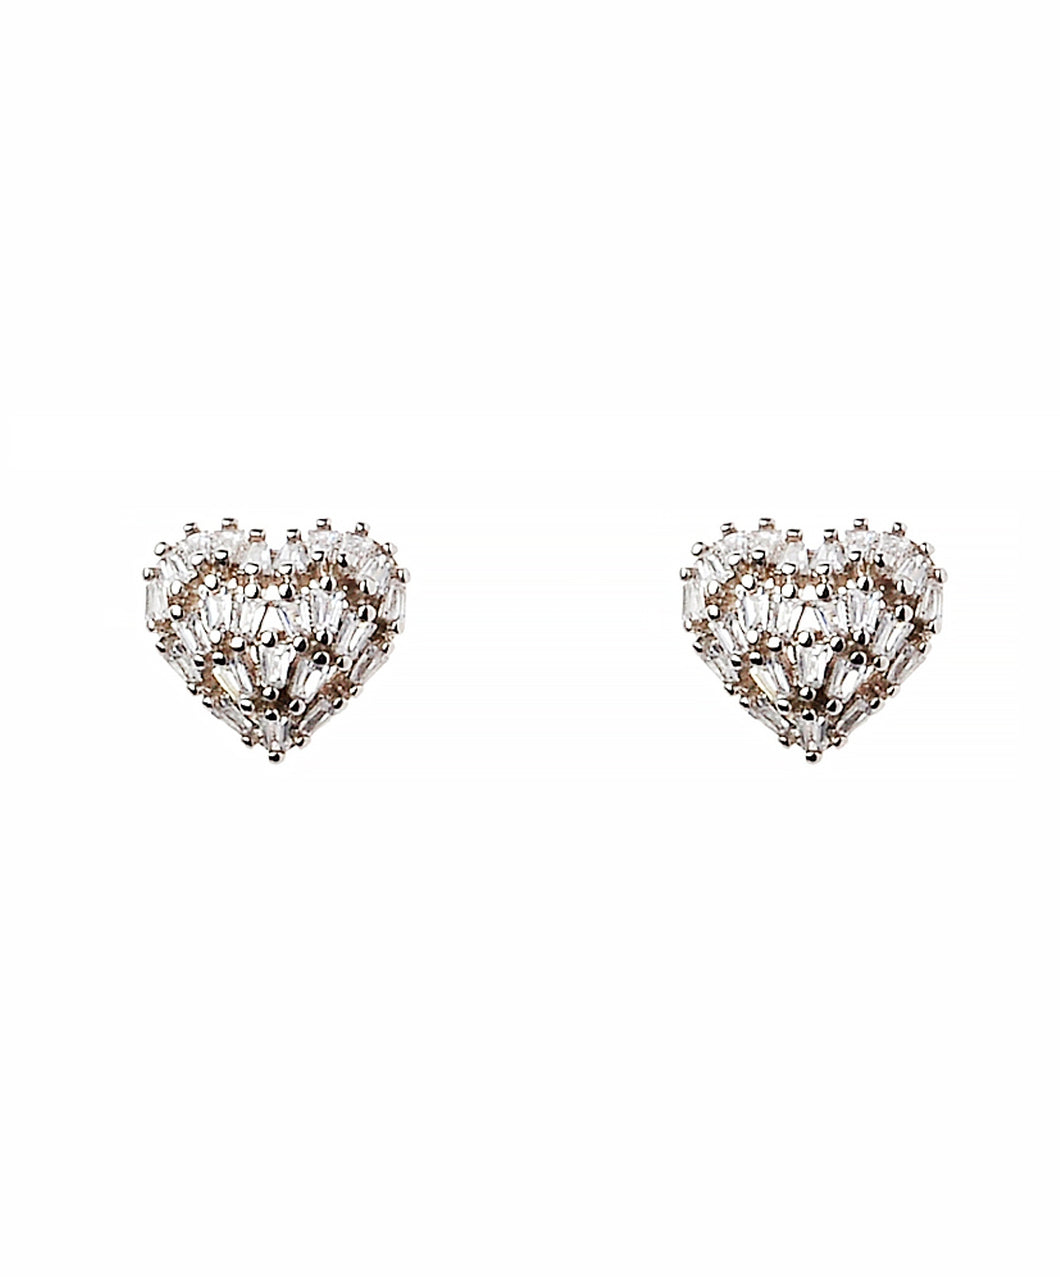 Silver Crystal Heart Stud Earrings